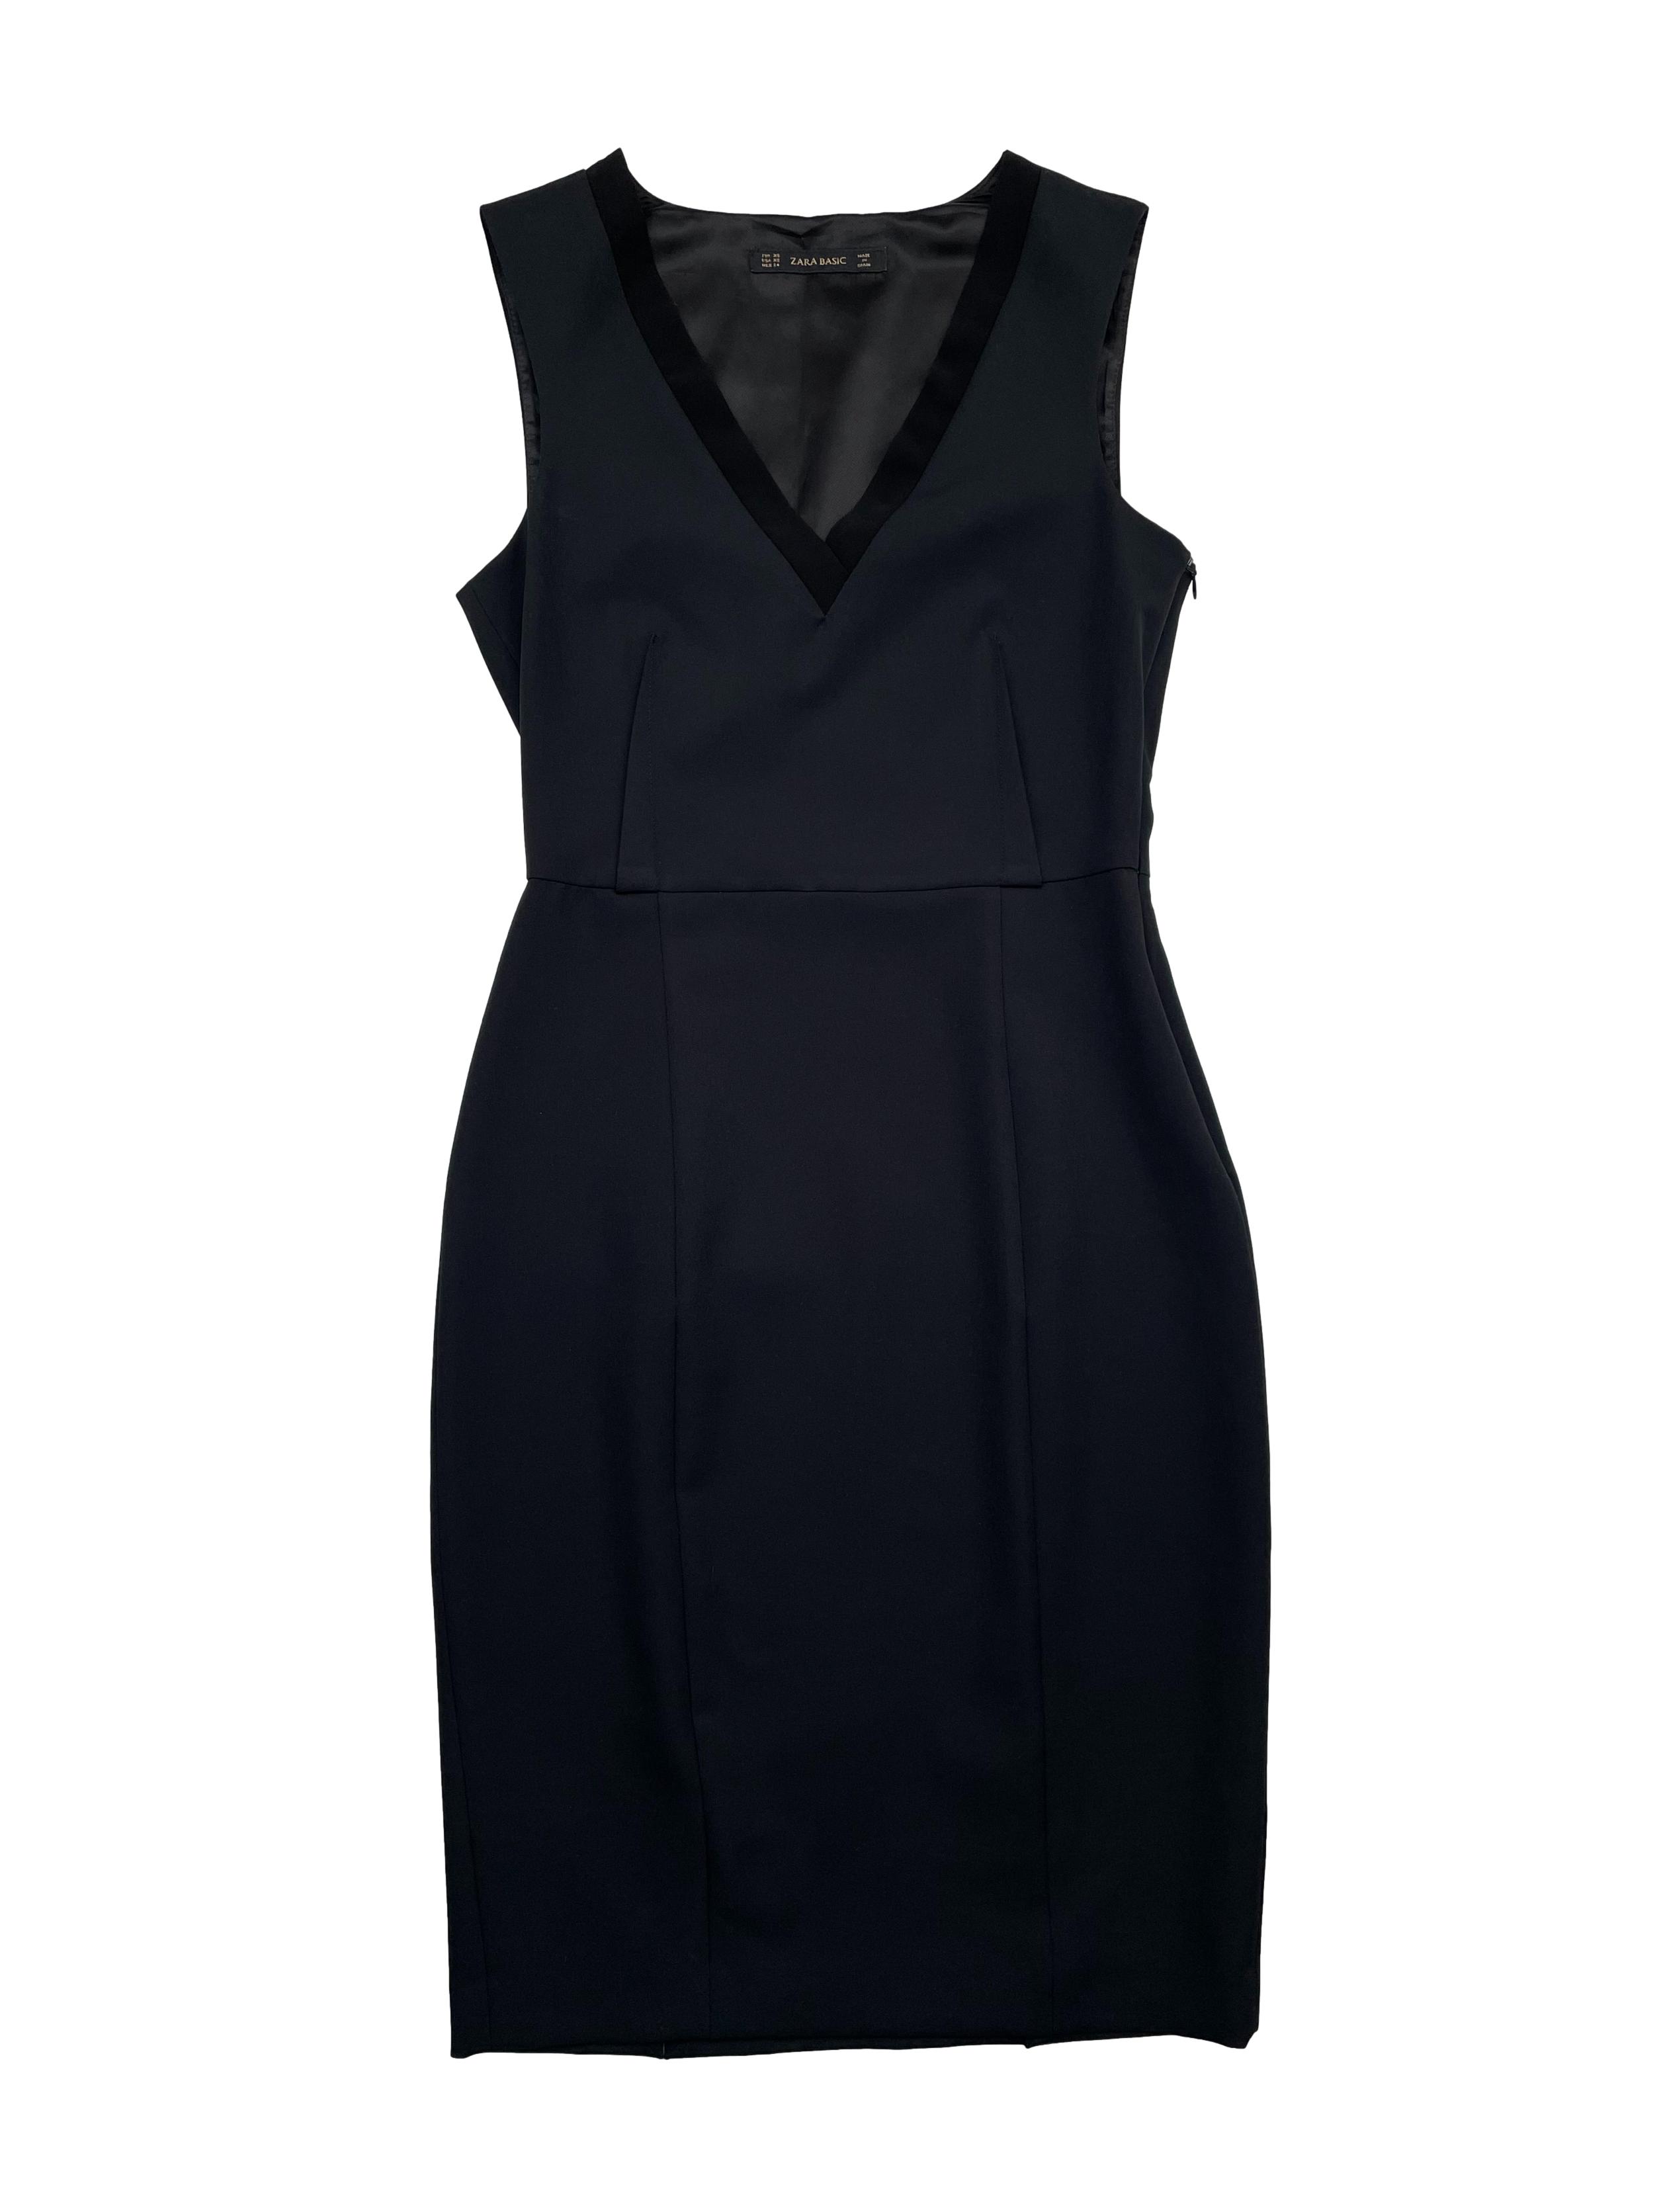 Vestido Zara negro entallado de tela plana con en V y cierre invisible lateral. Busto Largo | Las Traperas